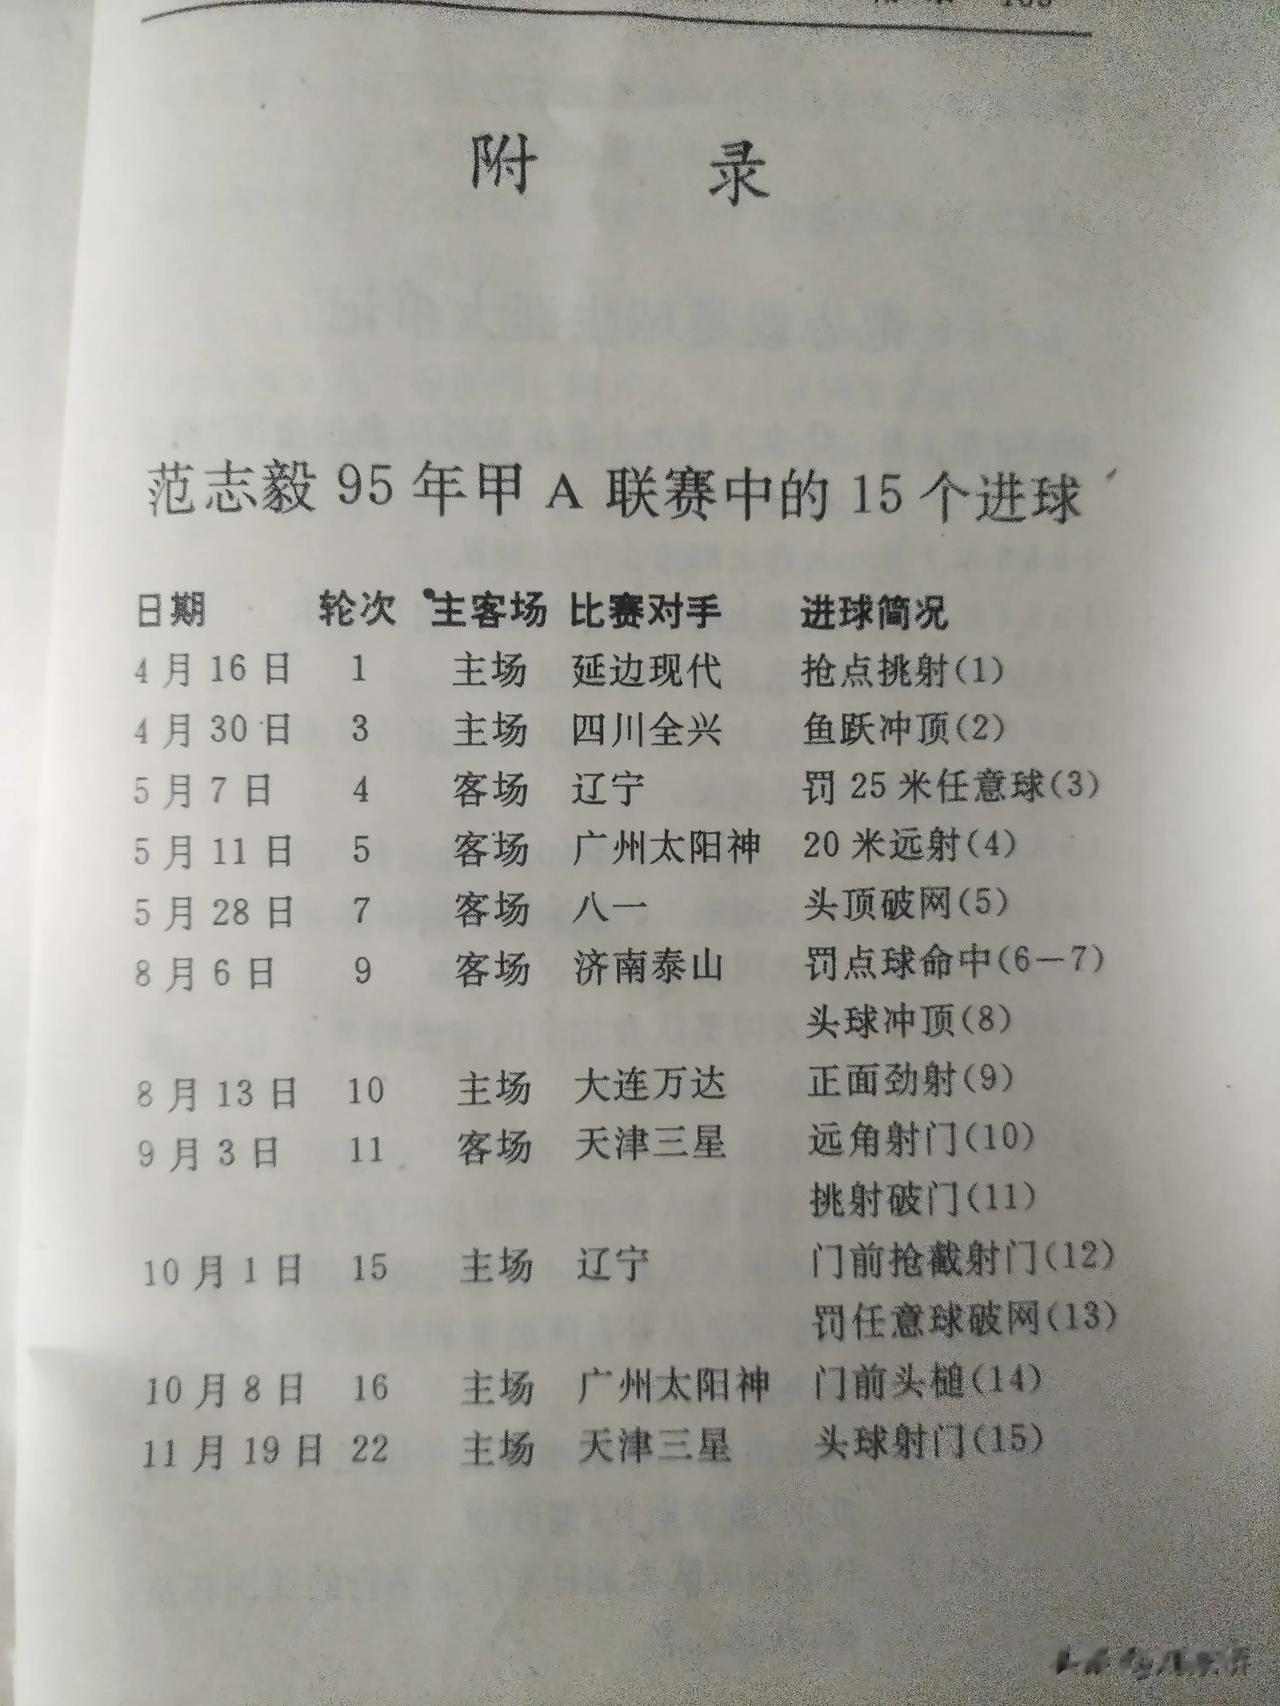 图为范志毅在1995赛季全国甲A联赛进球数据表。

这一年，范志毅不但收获了全国